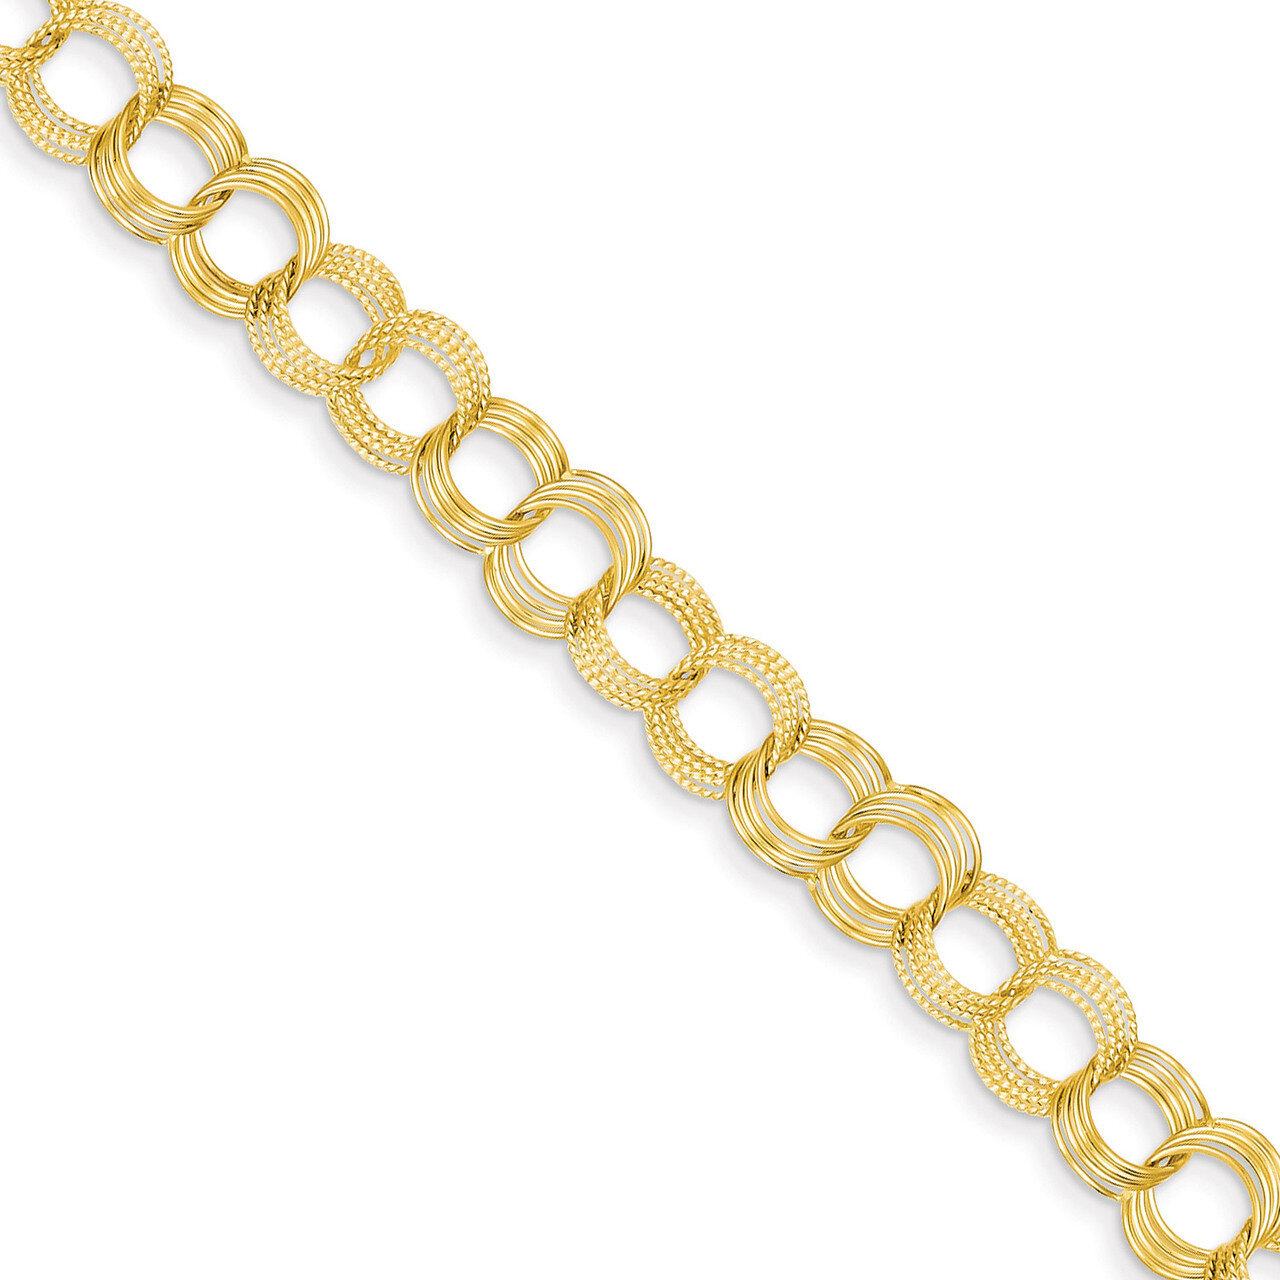 Triple Link Charm Bracelet 8 Inch 14k Gold Solid DO533-8